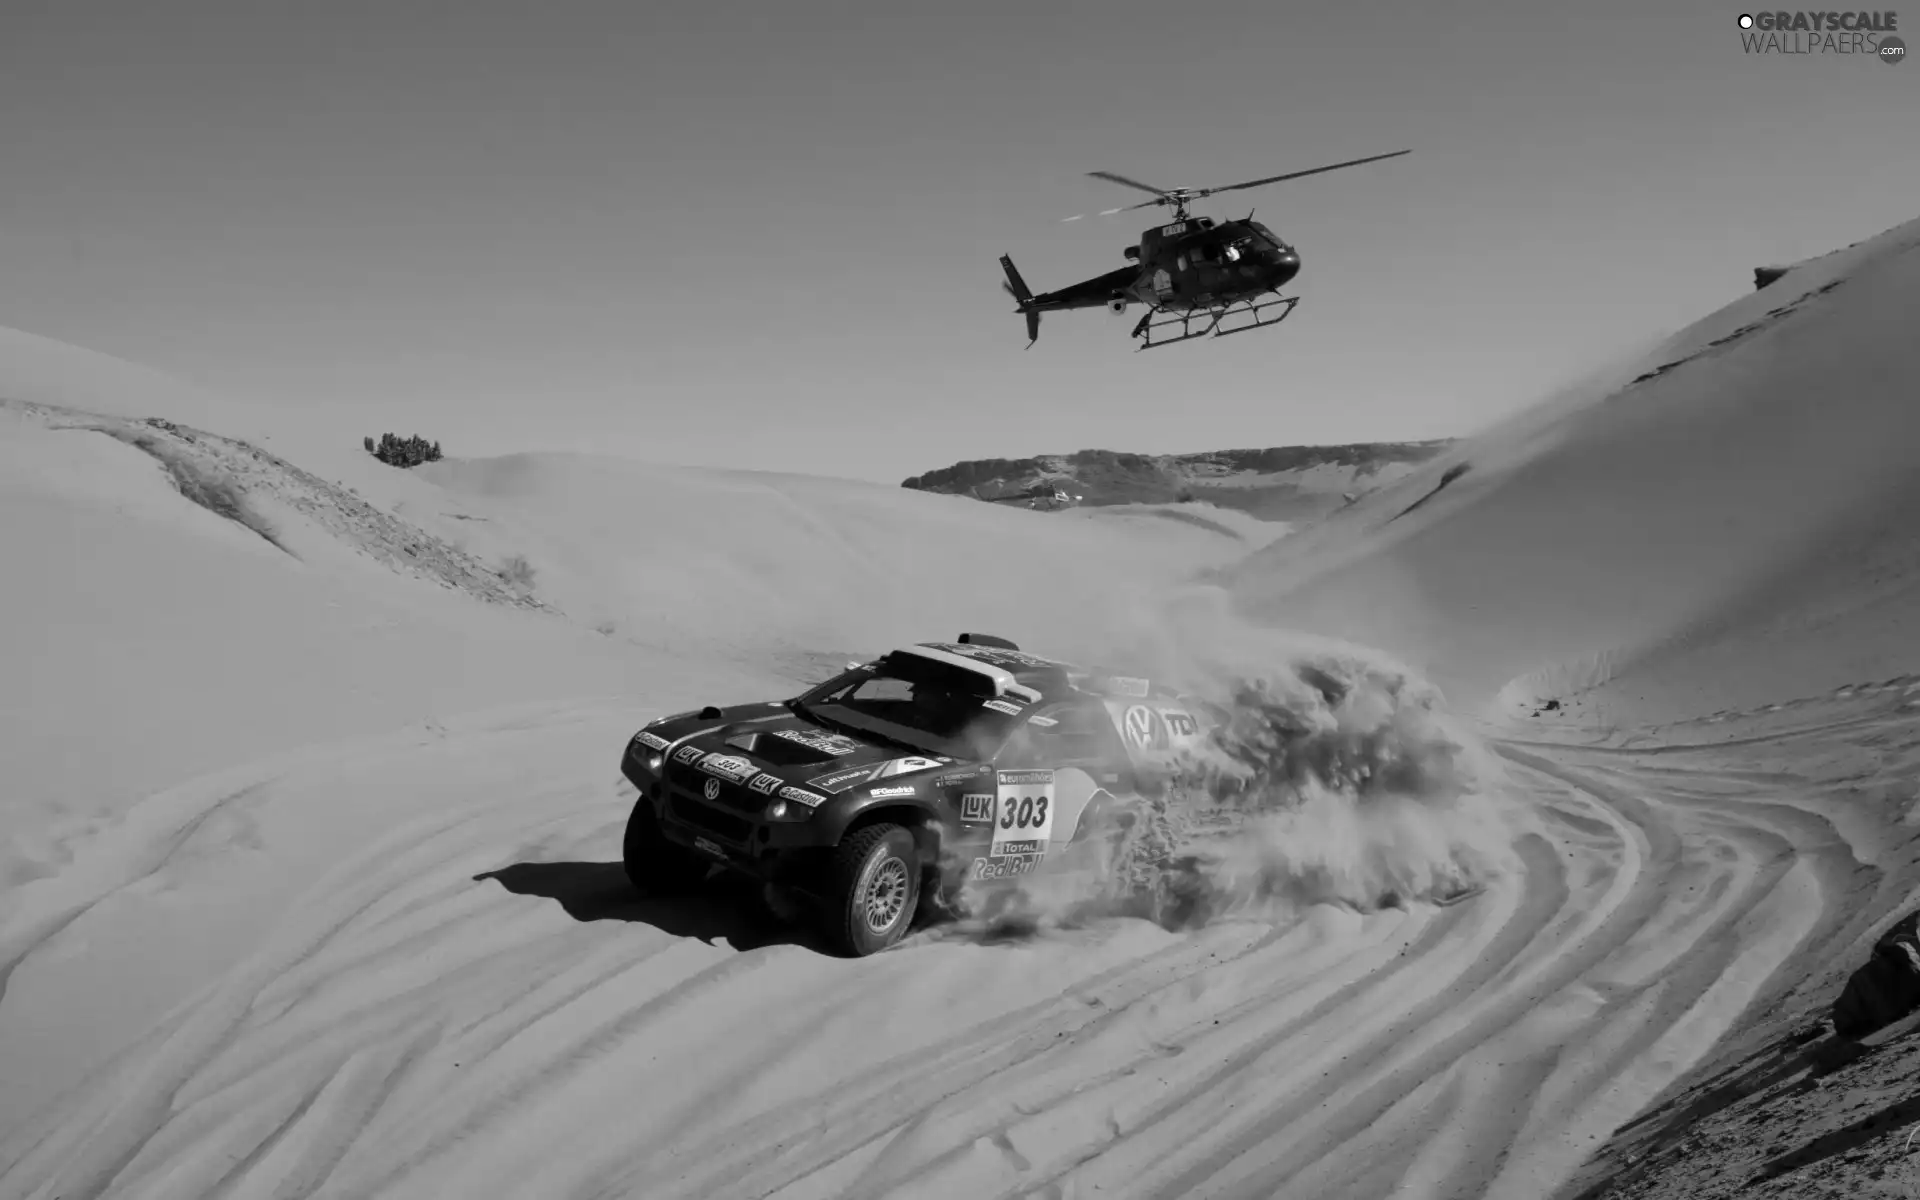 Helicopter, Desert, Volkswagen, Touareg, Dakar Rally